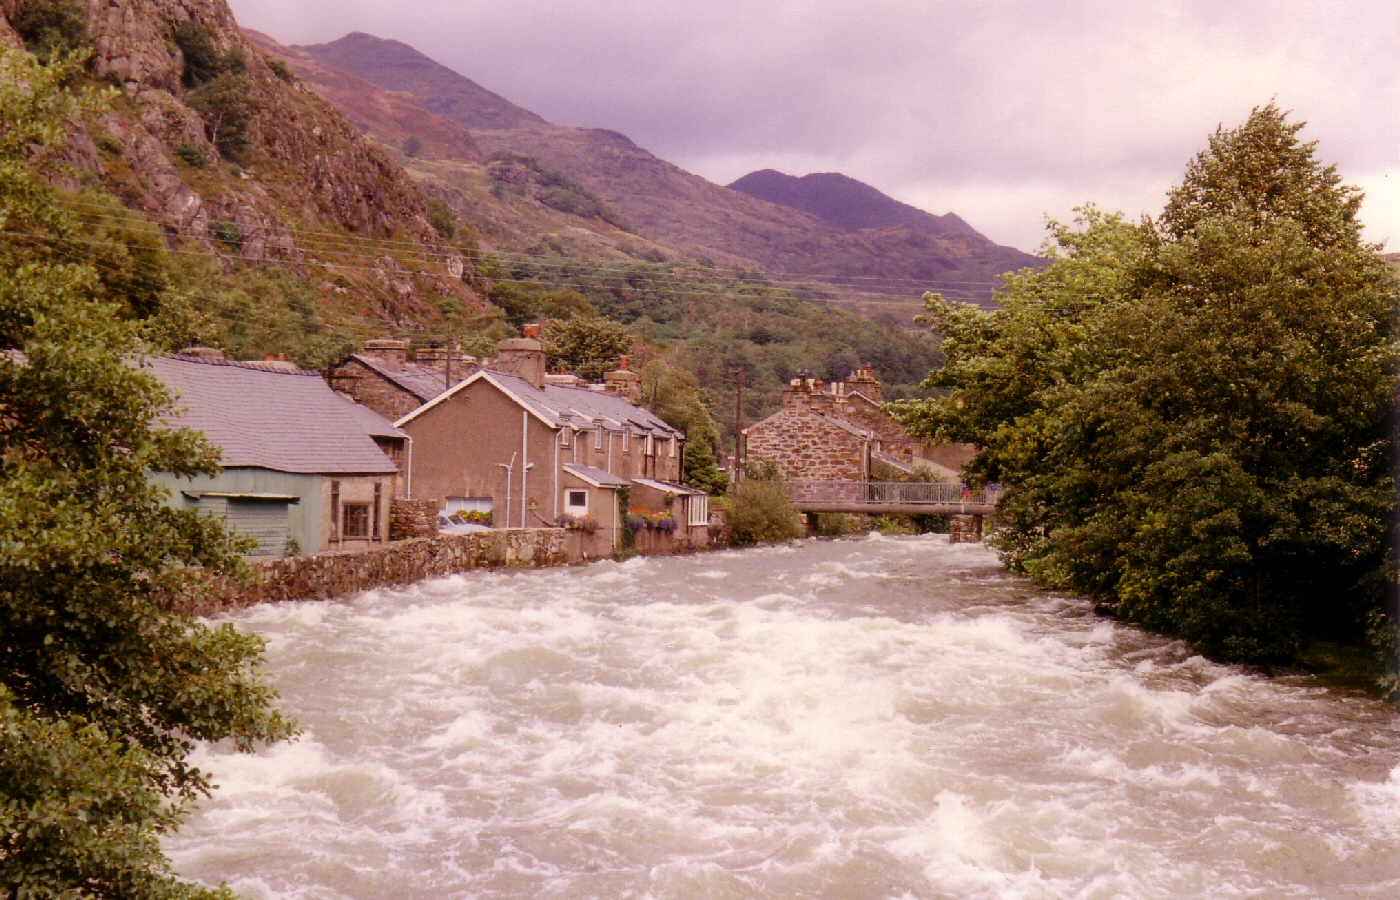 * Classic Cymru - Beddgelert - The Afon Glaslyn in full flood following days of heavy rain - 1987 (by AJW) *